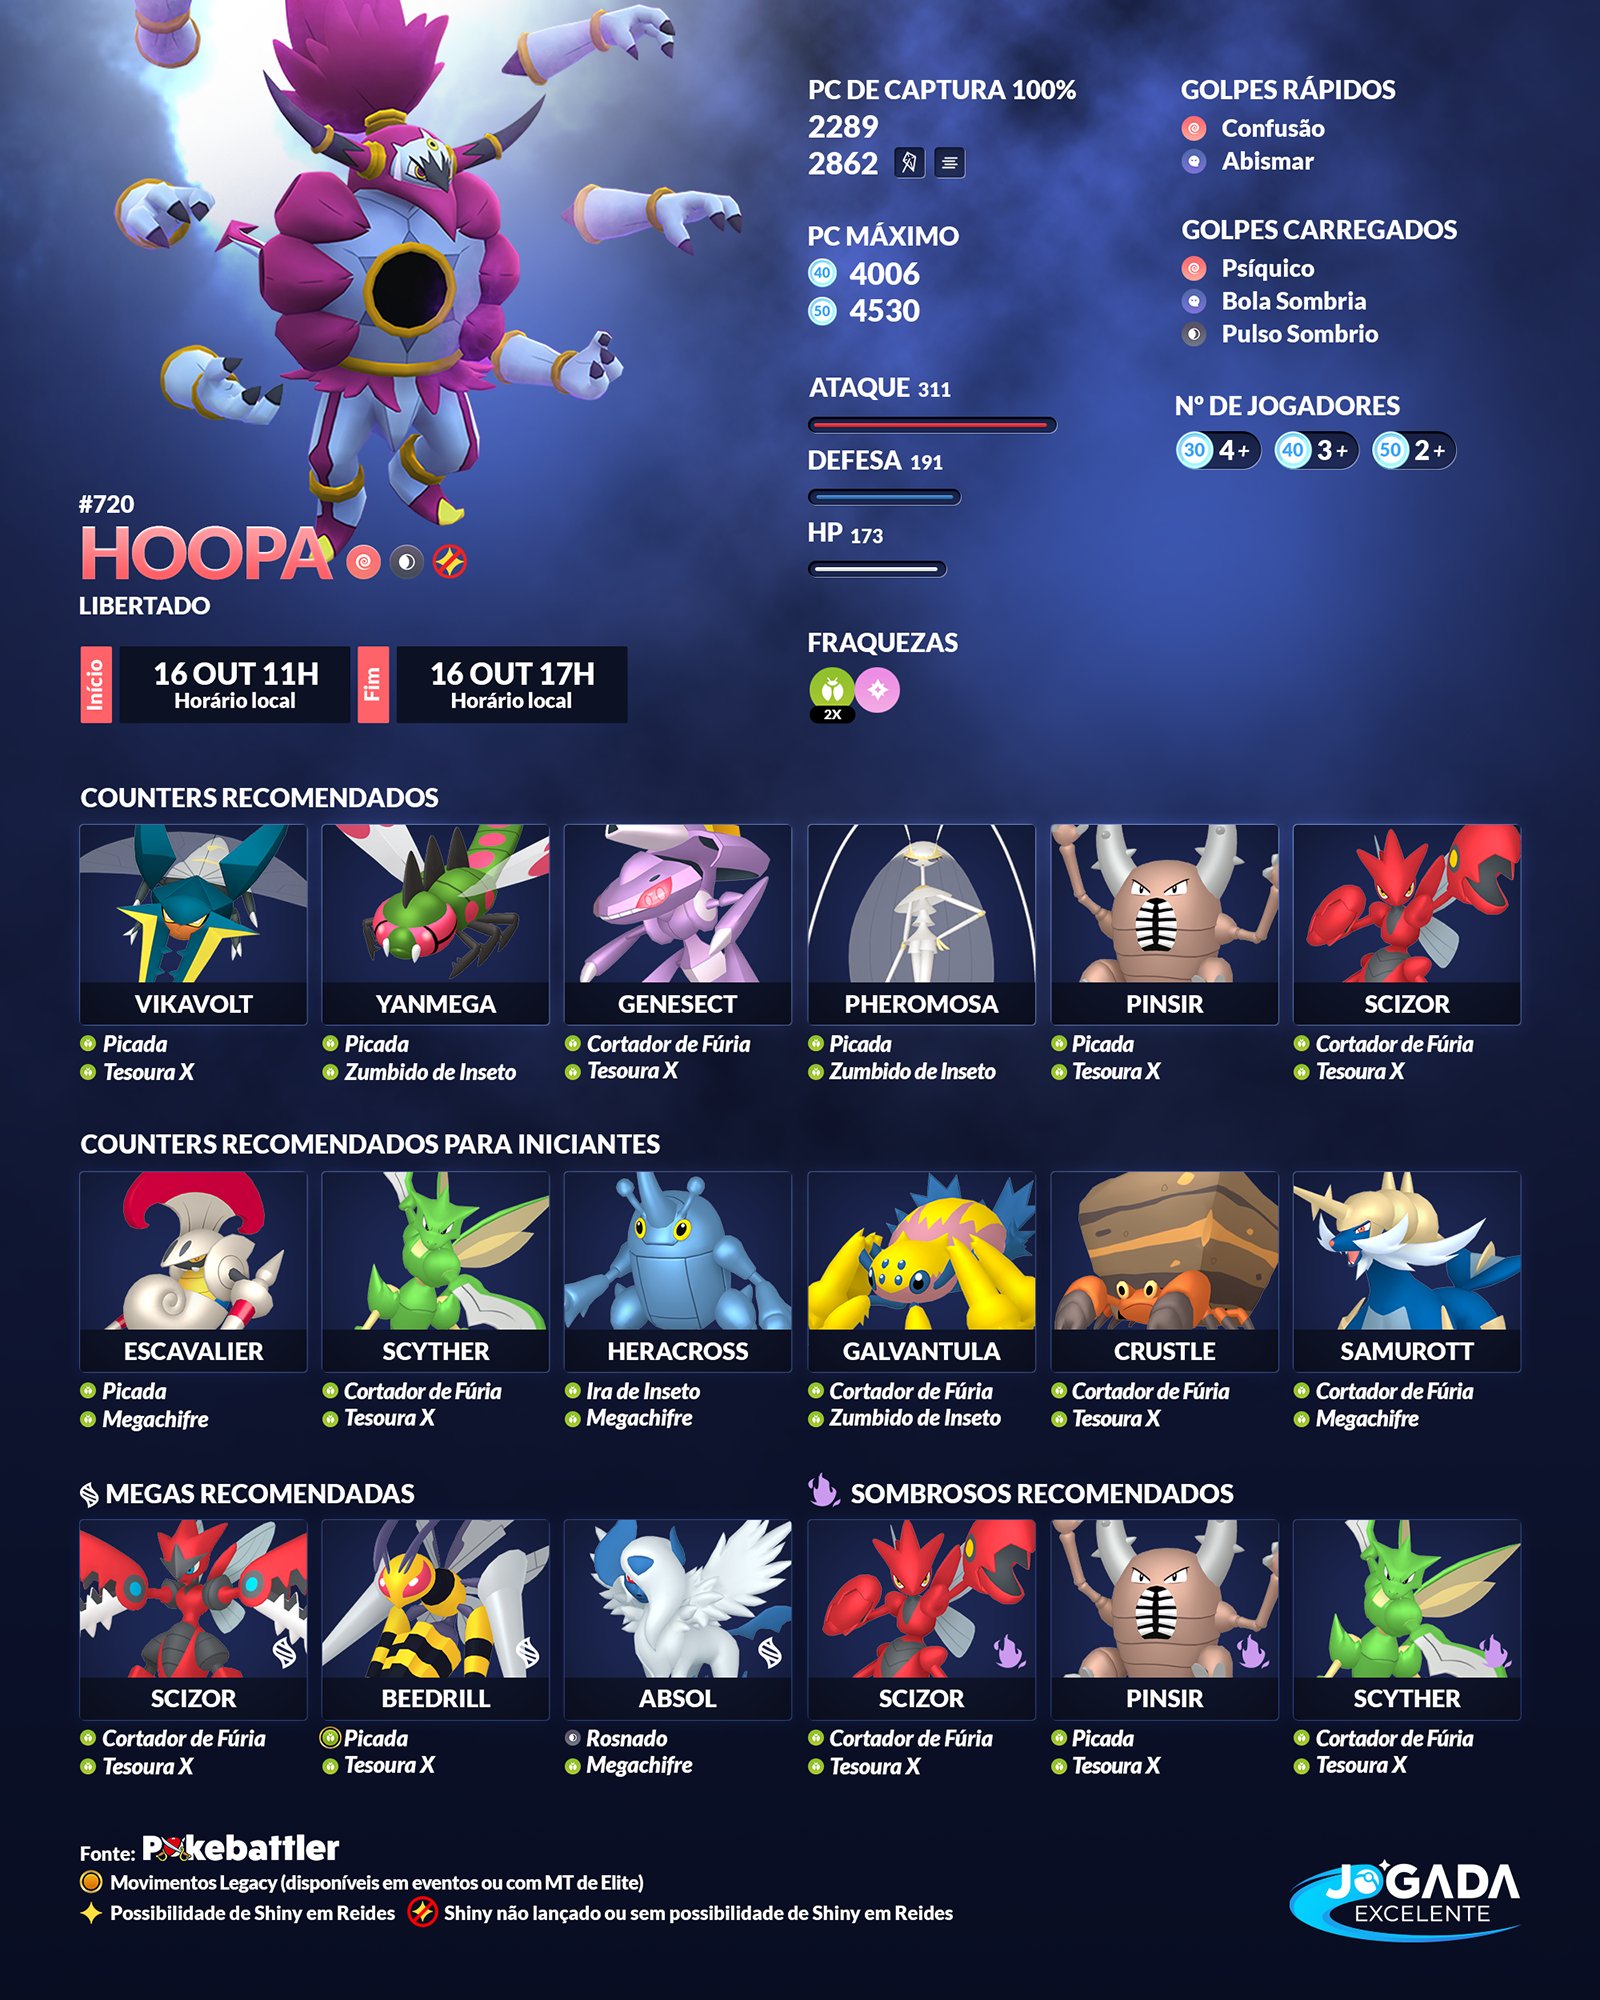 Jogada Excelente on X: Confira a lista atualizada de quais são os melhores  Pokémon de cada tipo em Pokémon GO. ㅤ #pokemongobrasil #pokemongobr # pokemongo #pokemongolatam #pokemongoportugal #pokemongofriends   / X